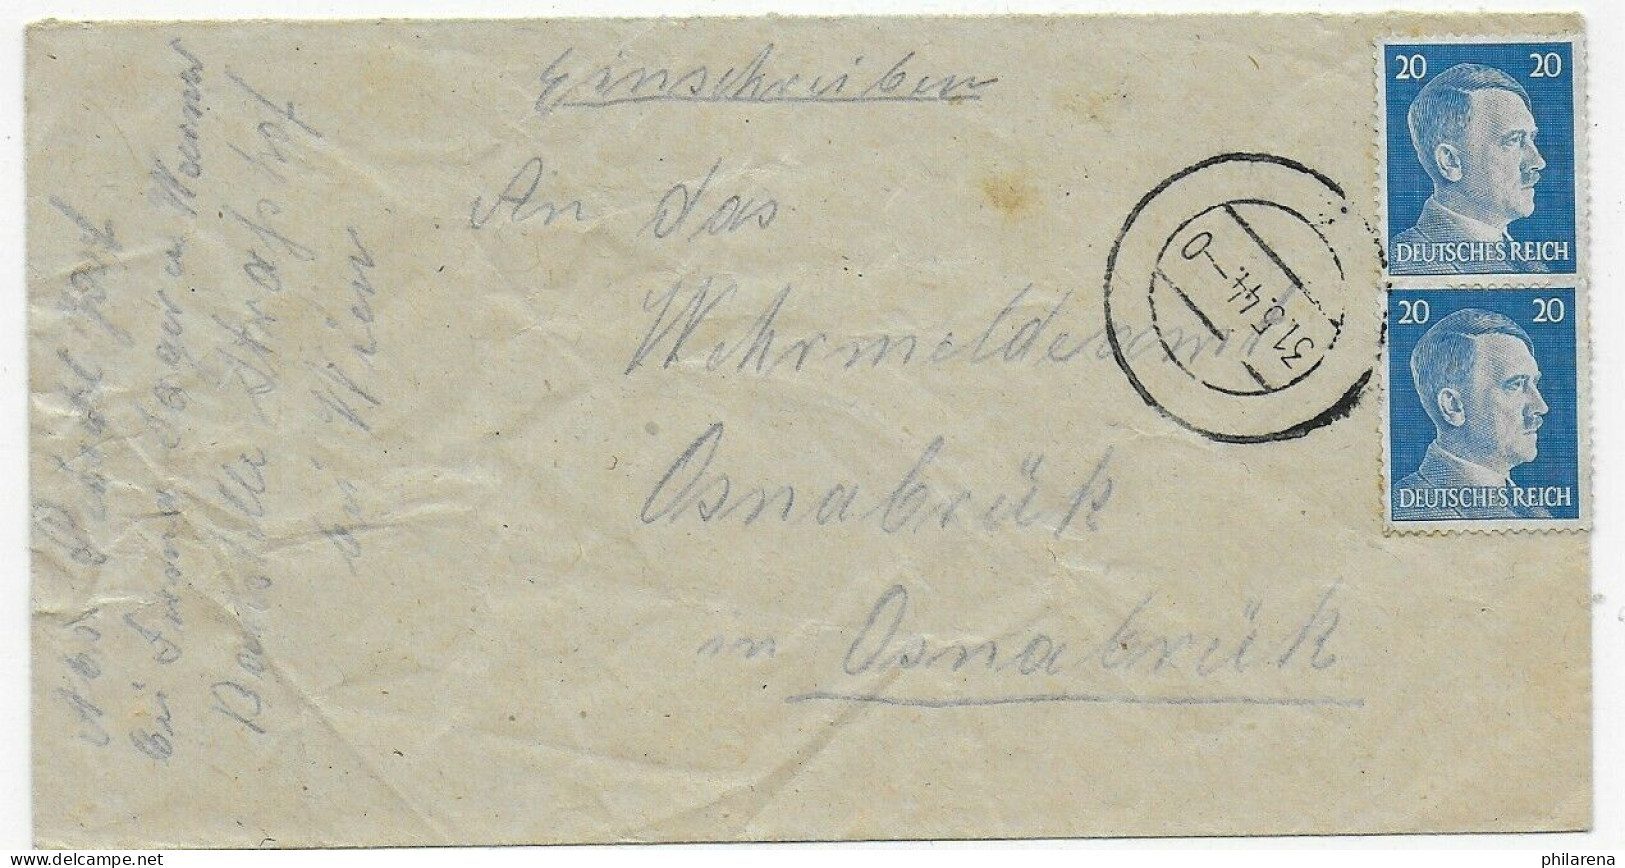 Aufsichstspersonal Arbeitslager Strasshof/Wien Nach Osnabrück,1944, Stummer Stpl - Feldpost 2. Weltkrieg